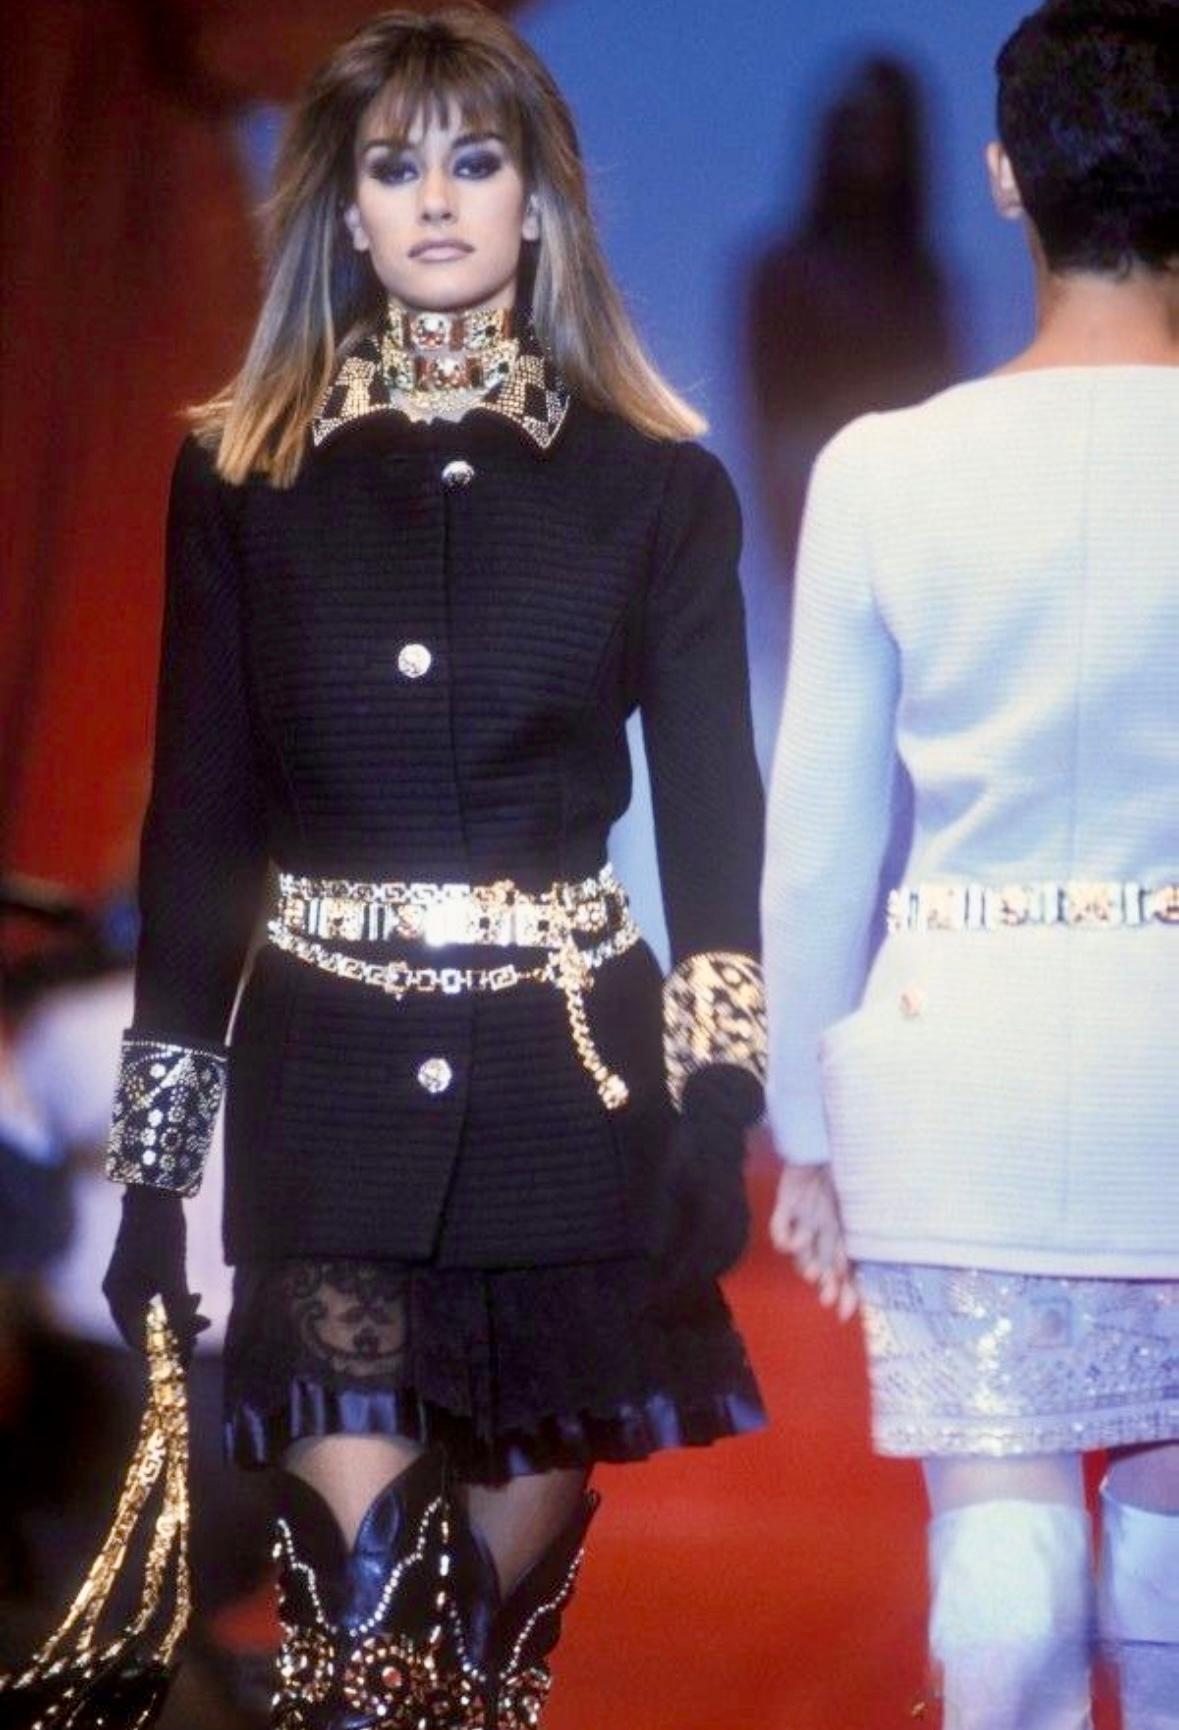 Voici une superbe veste en laine matelassée noire de Atelier Versace, créée par Gianni Versace pour la collection Haute Couture Automne/Hiver 1991. Cette veste magnifiquement travaillée et fabriquée à la main a fait ses débuts sur le podium de la